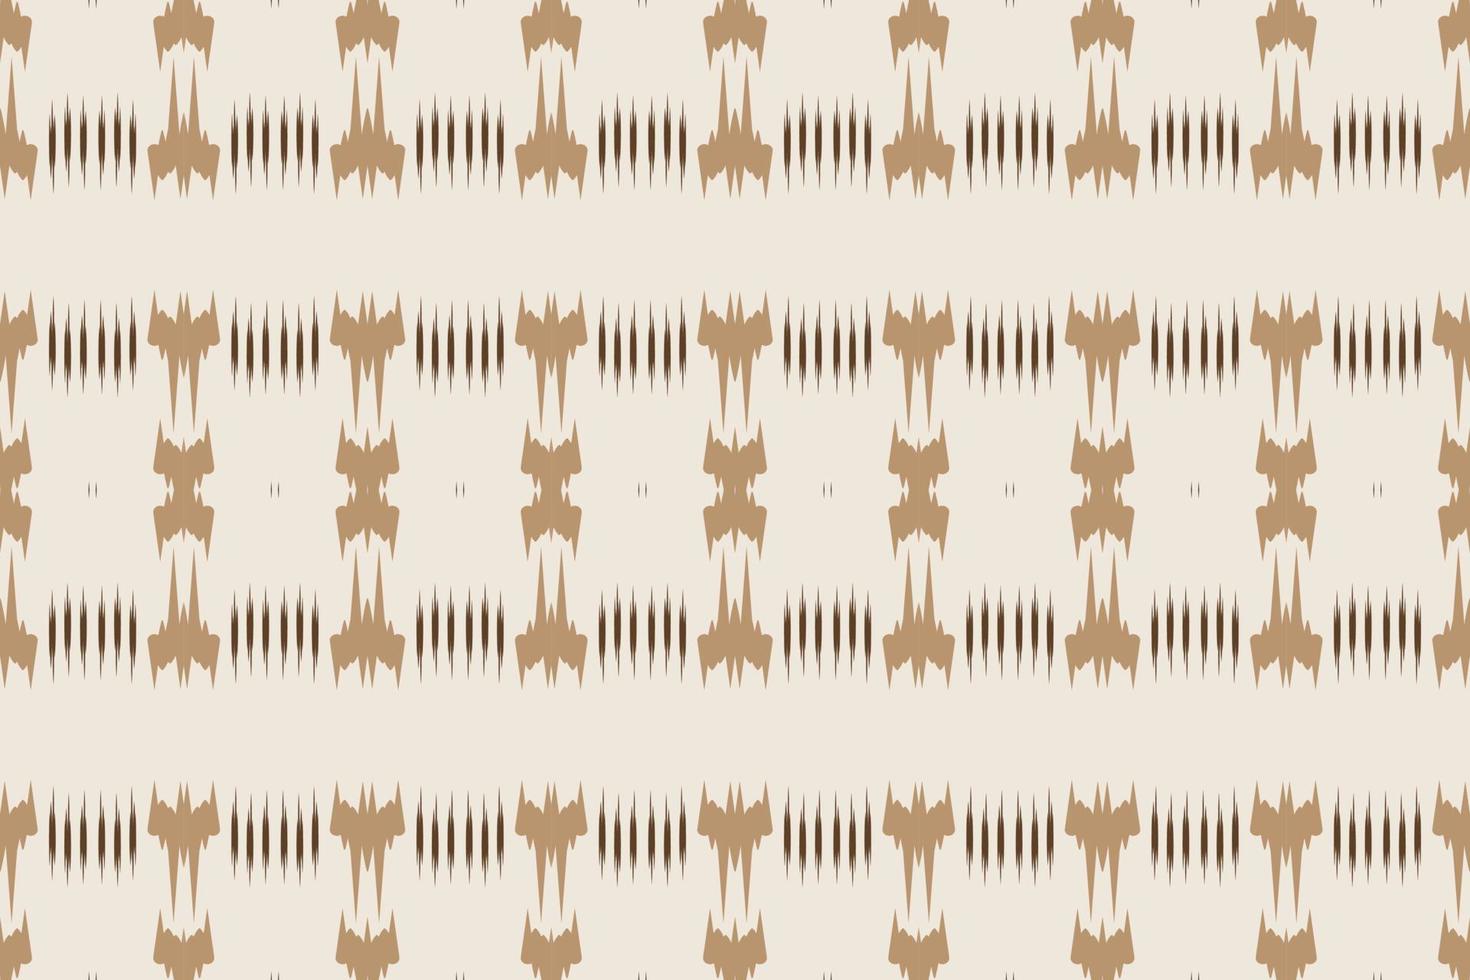 motivo ikat gallone tribale sfondo Borneo scandinavo batik boemo struttura digitale vettore design per Stampa saree Kurti tessuto spazzola simboli campioni